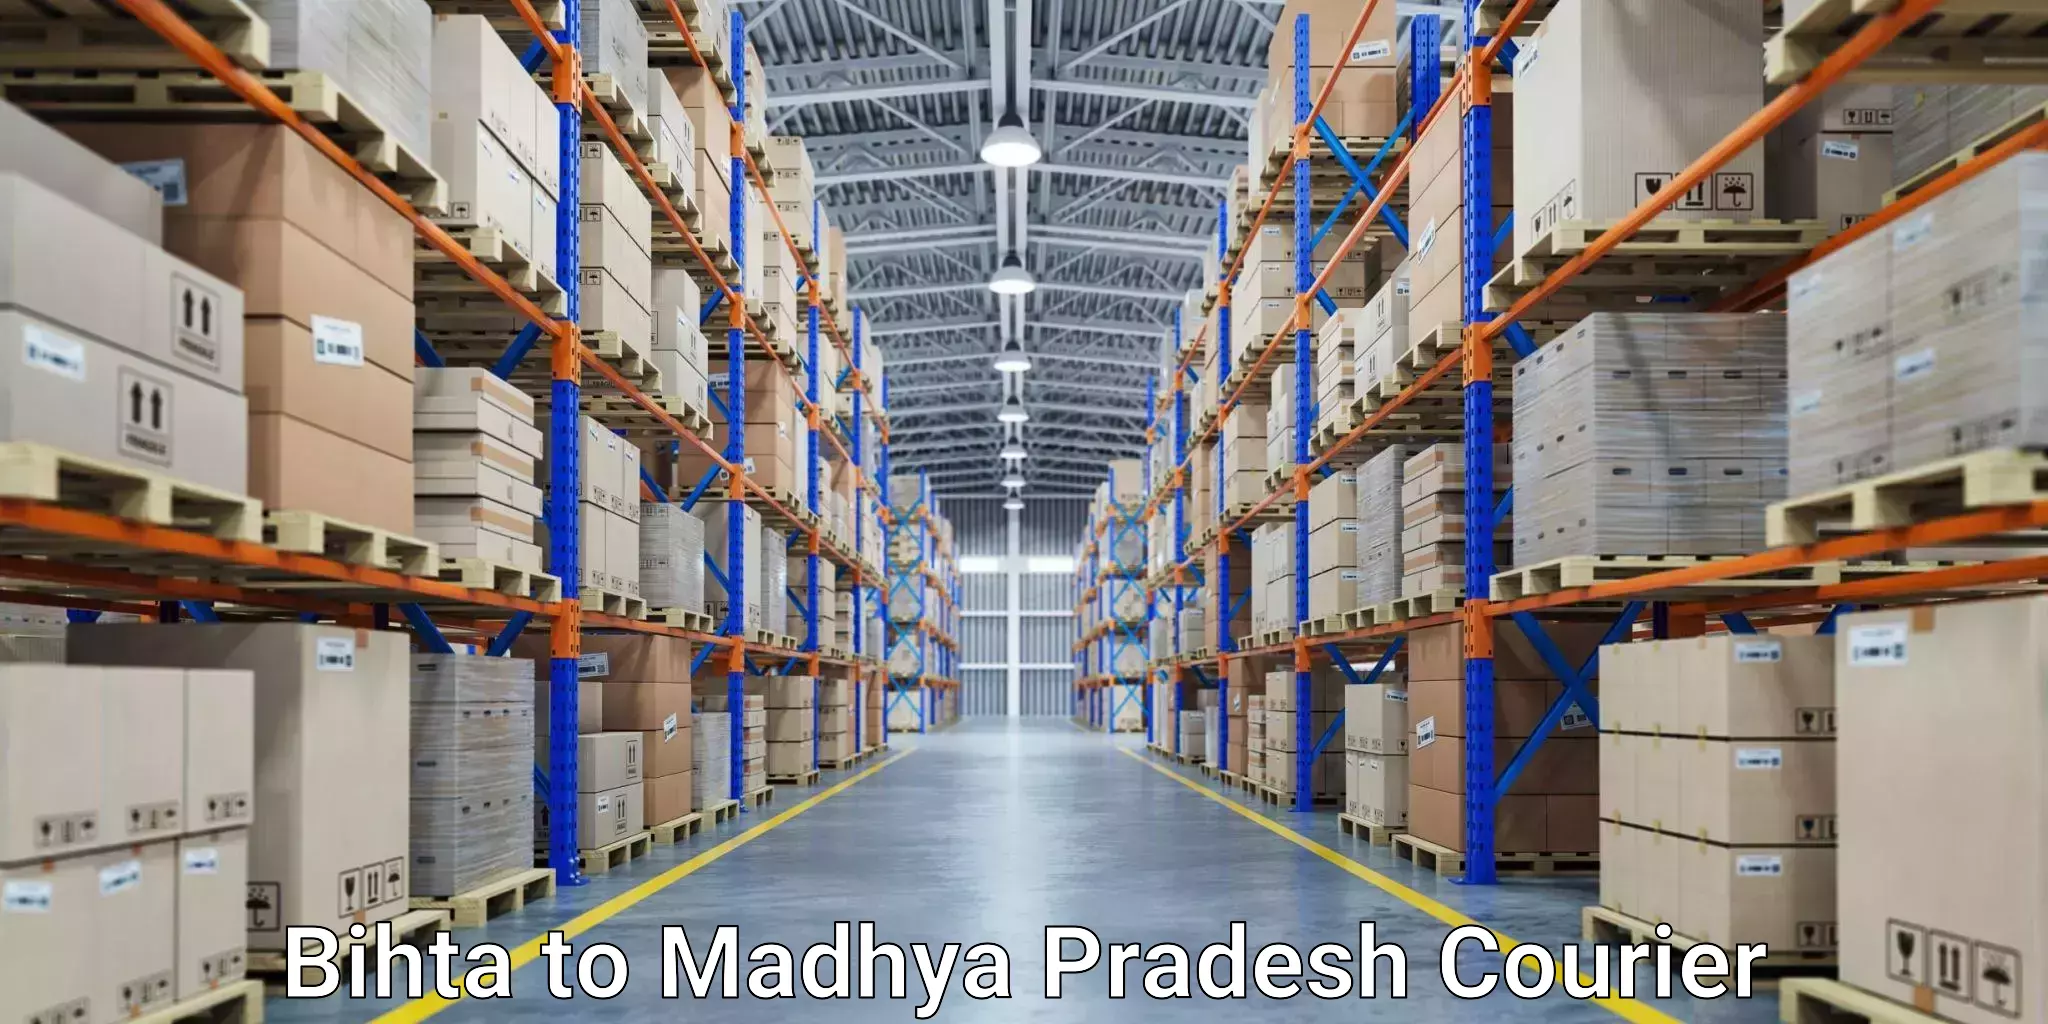 Express courier capabilities Bihta to Madhya Pradesh